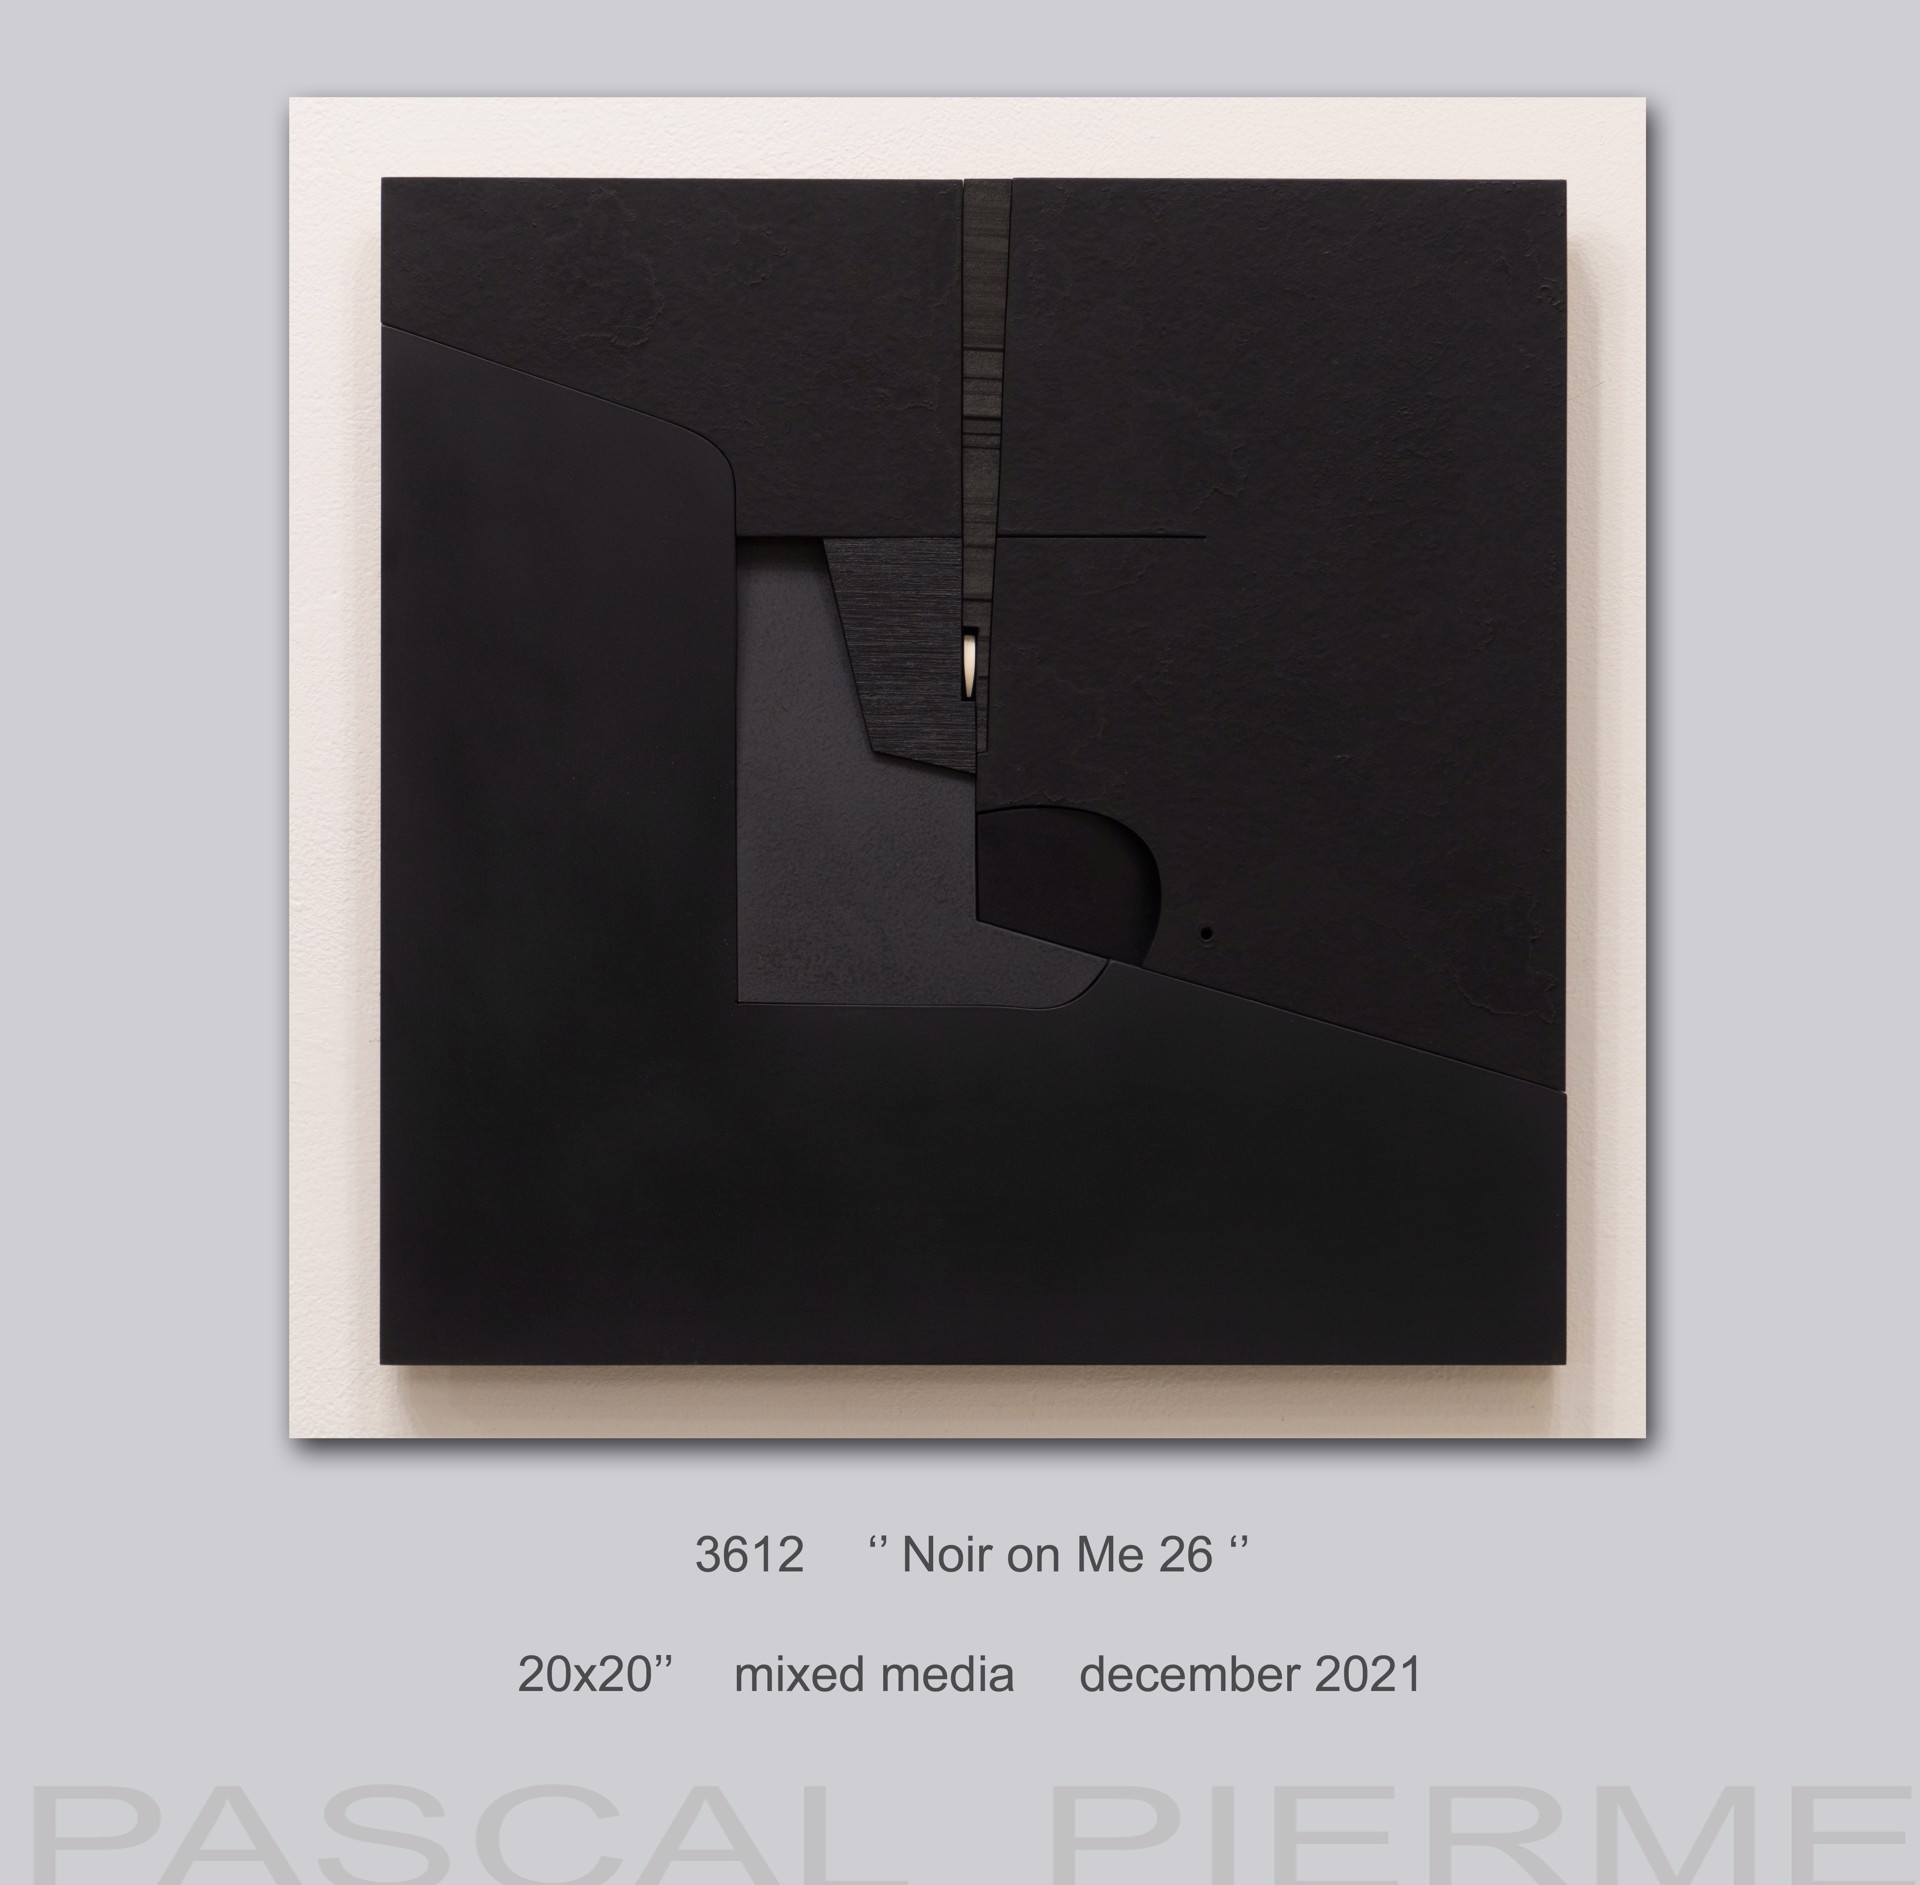 Noir on Me 26 by Pascal Piermé